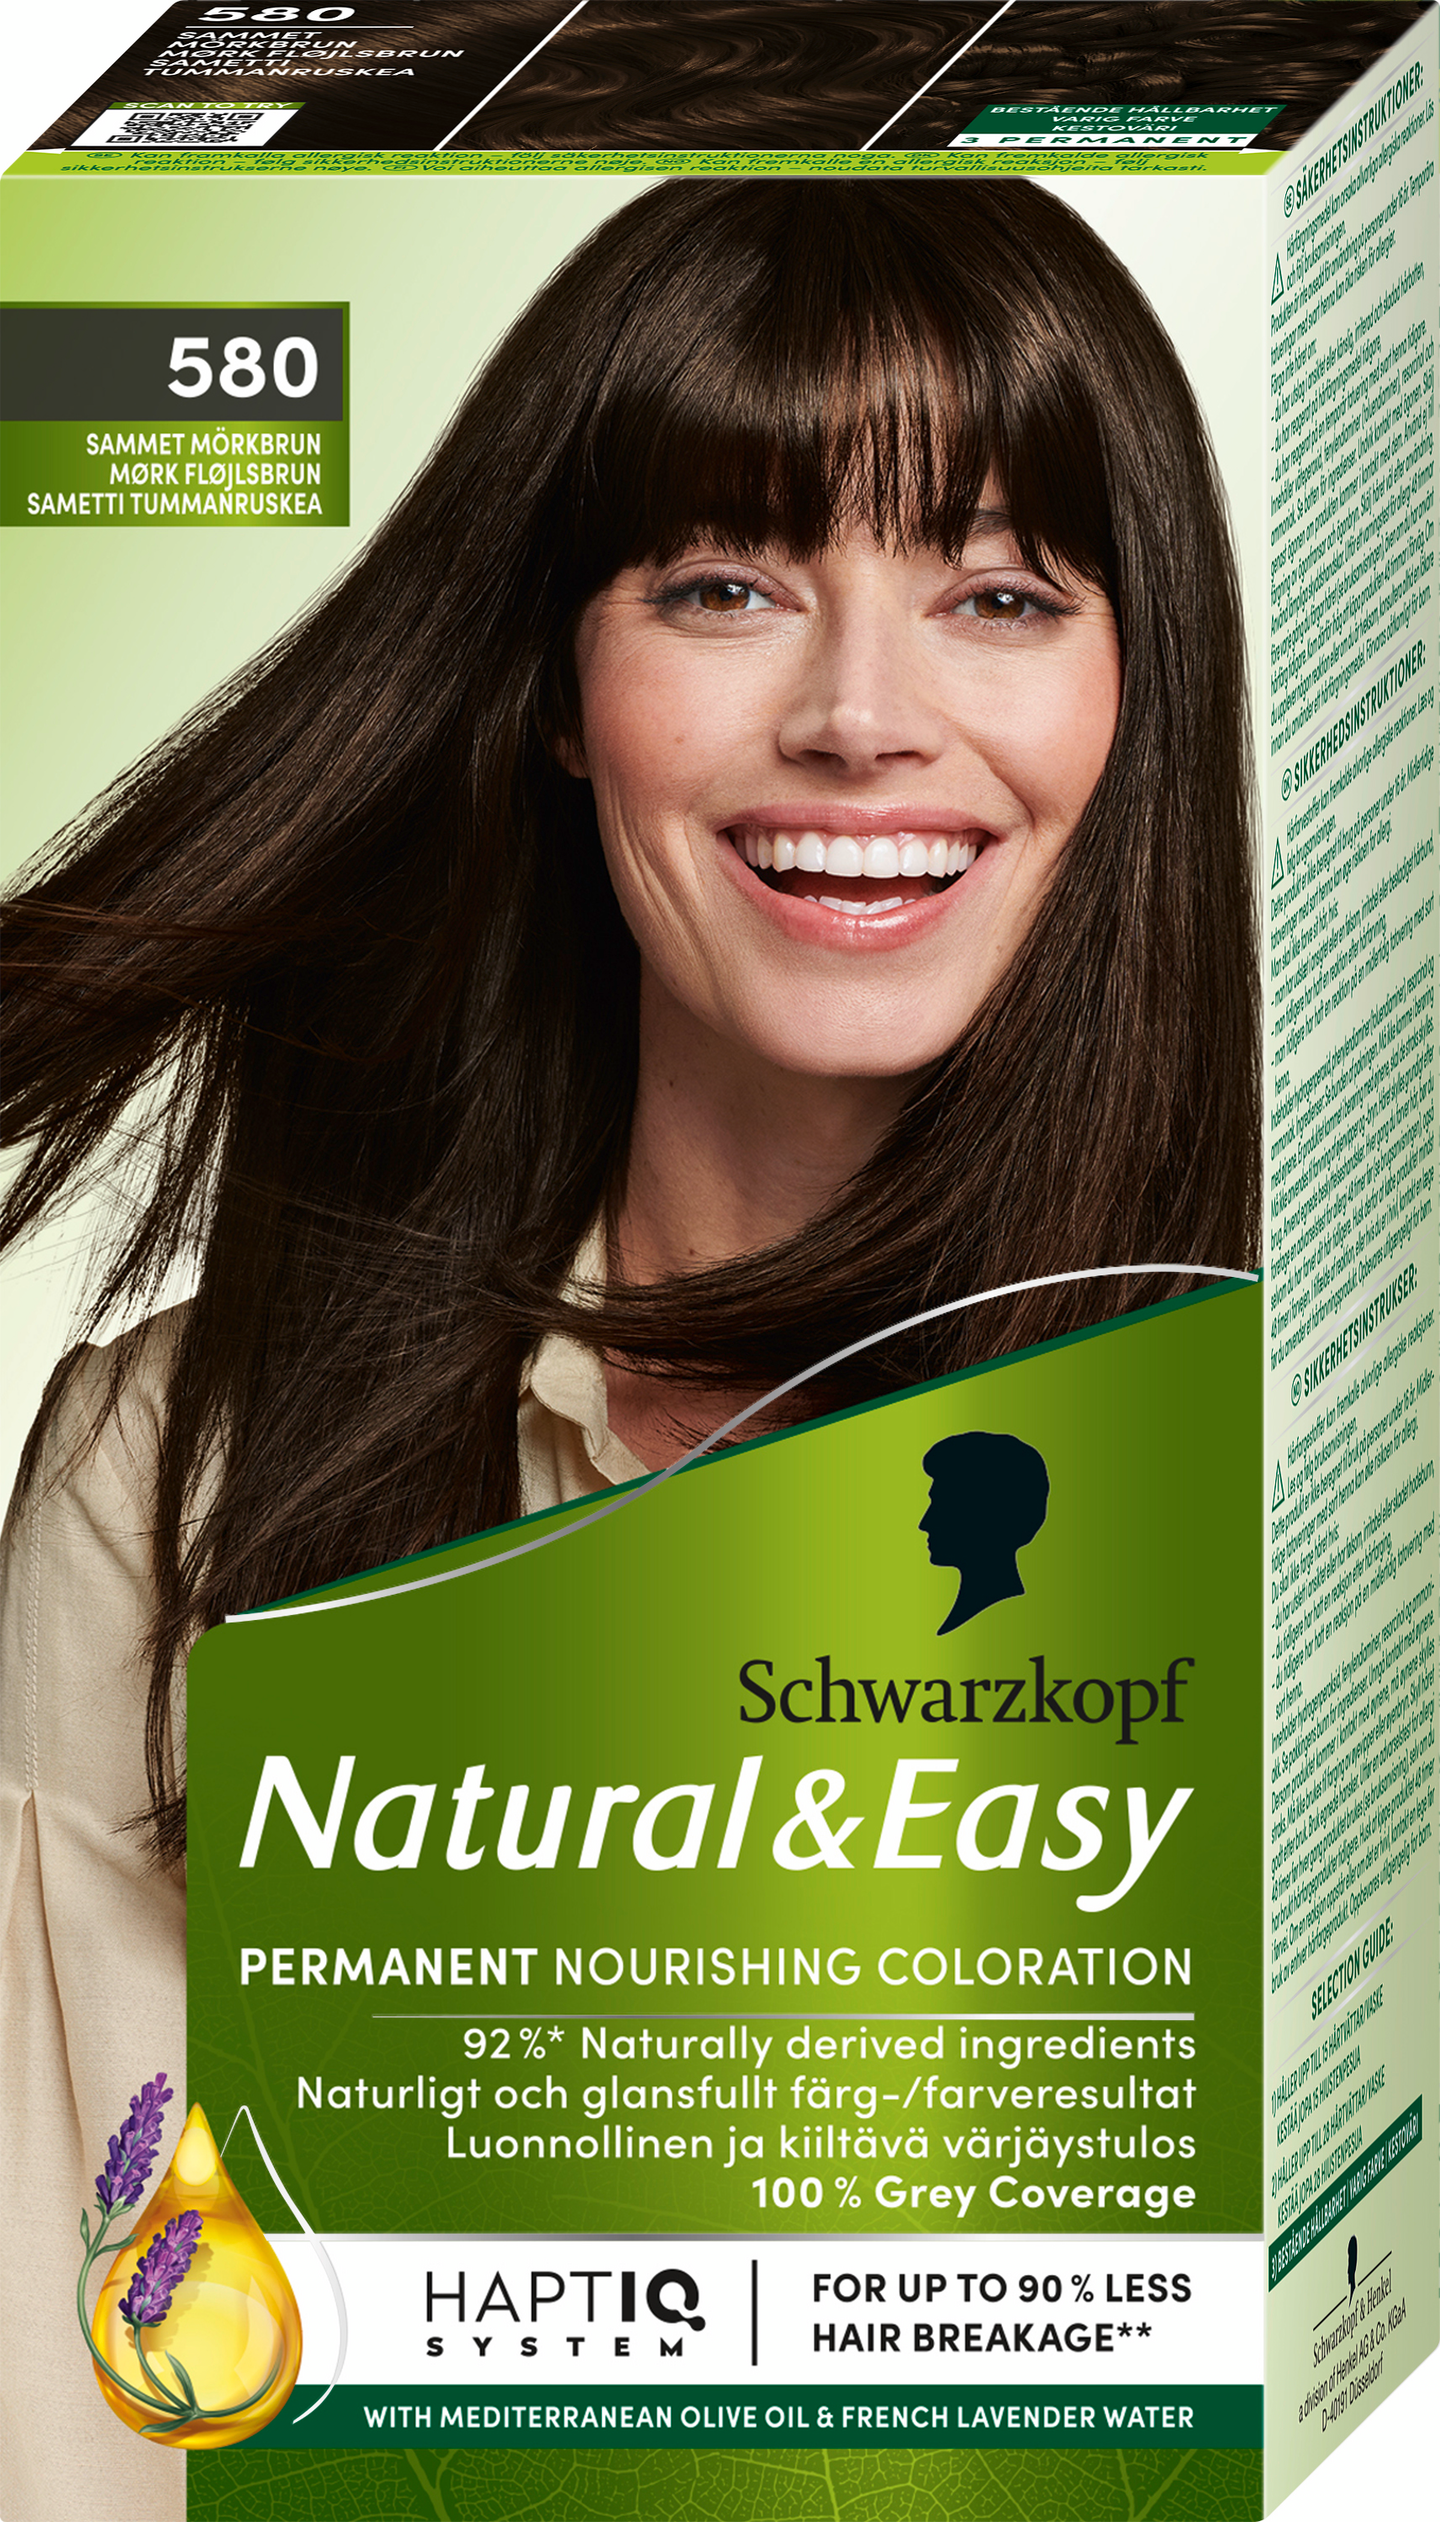 Schwarzkopf Natural & Easy hiusväri 580 Sametti Tummanruskea